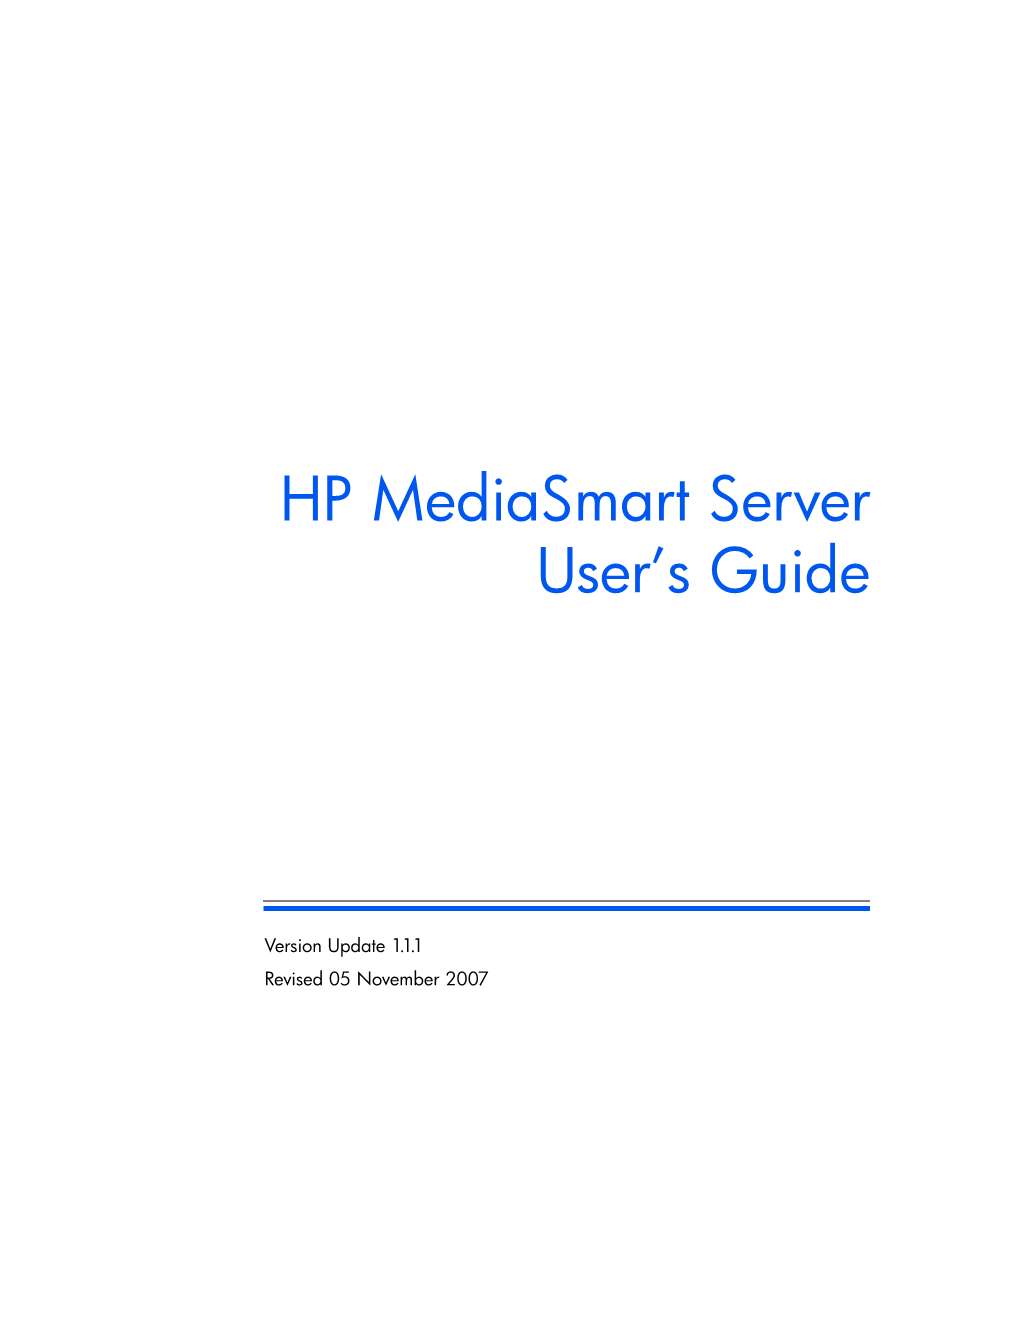 HP Mediasmart Server User's Guide